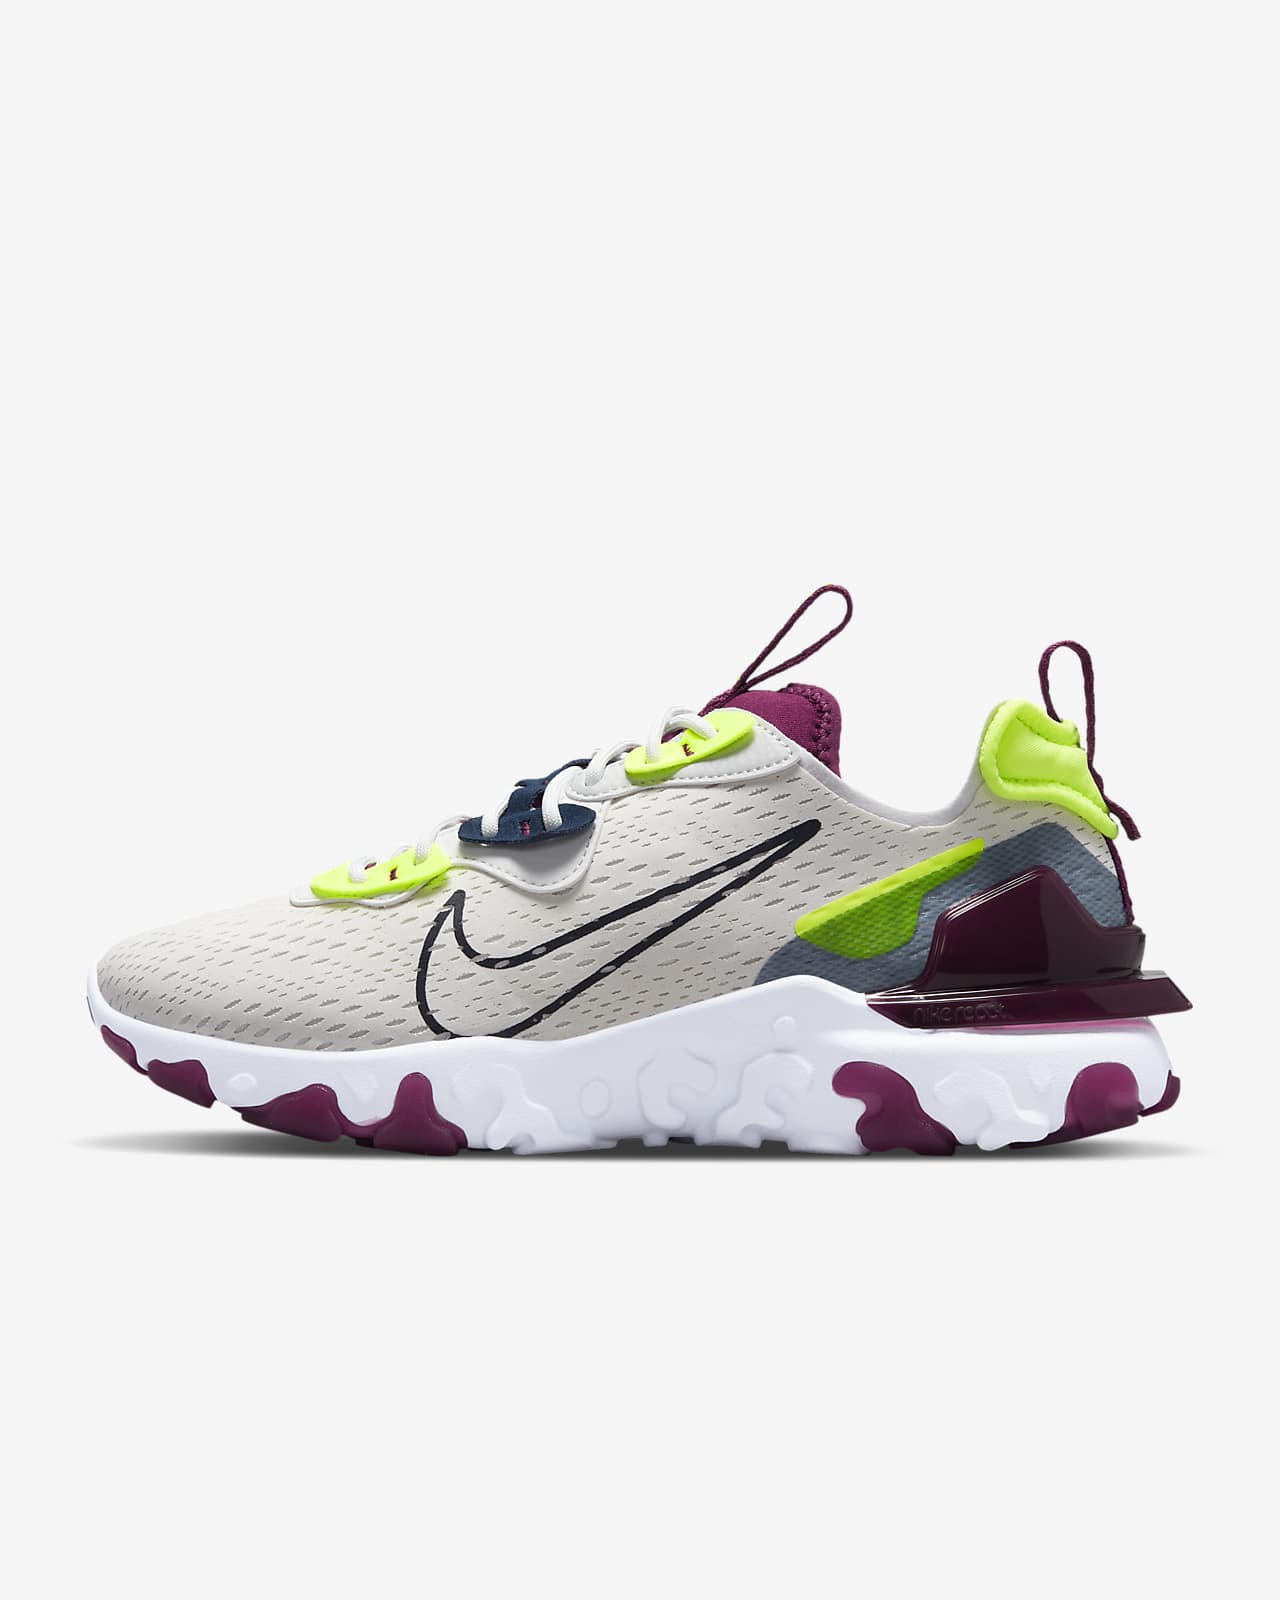 Nike React Vision Women's Shoe